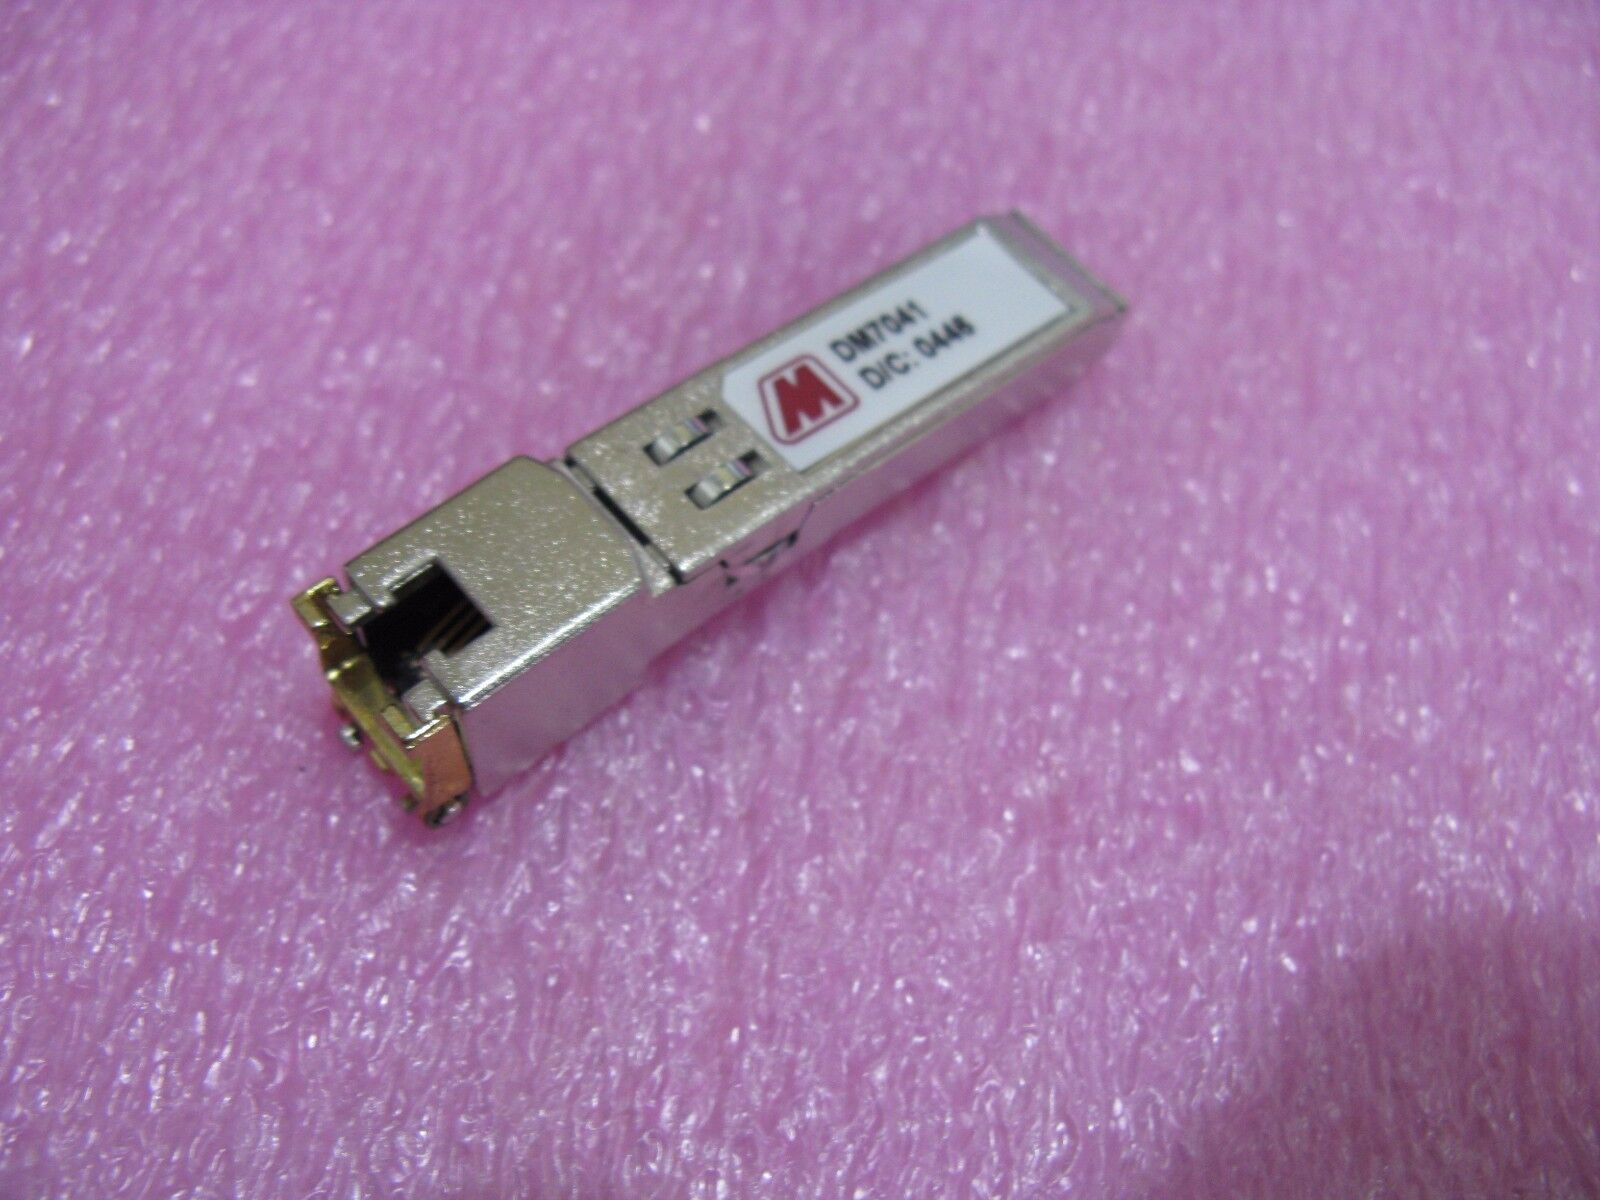 Methode DM7041 SFP Gigabit Ethernet RJ45 Transceiver 1000BaseT - RL3608